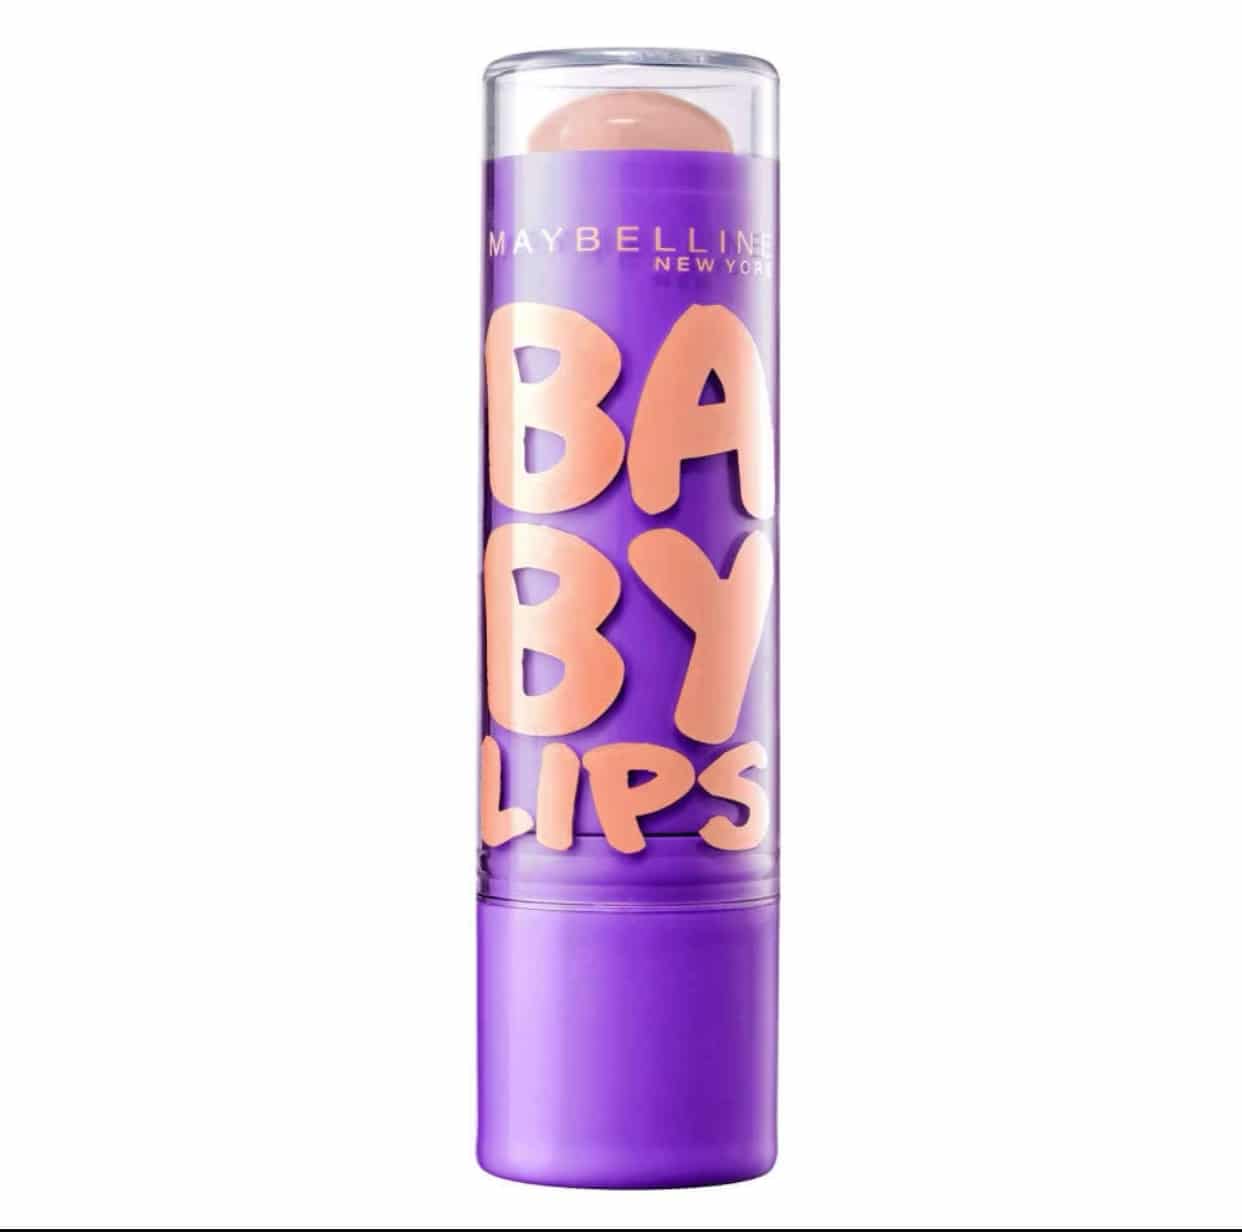 gfür Peach Pflegebalsam Baby LSF20, 1,46€(statt Lips, 2,79€) Kiss, Feuchtigkeitsspendender Lippenpflege, Maybelline York New 5 mit